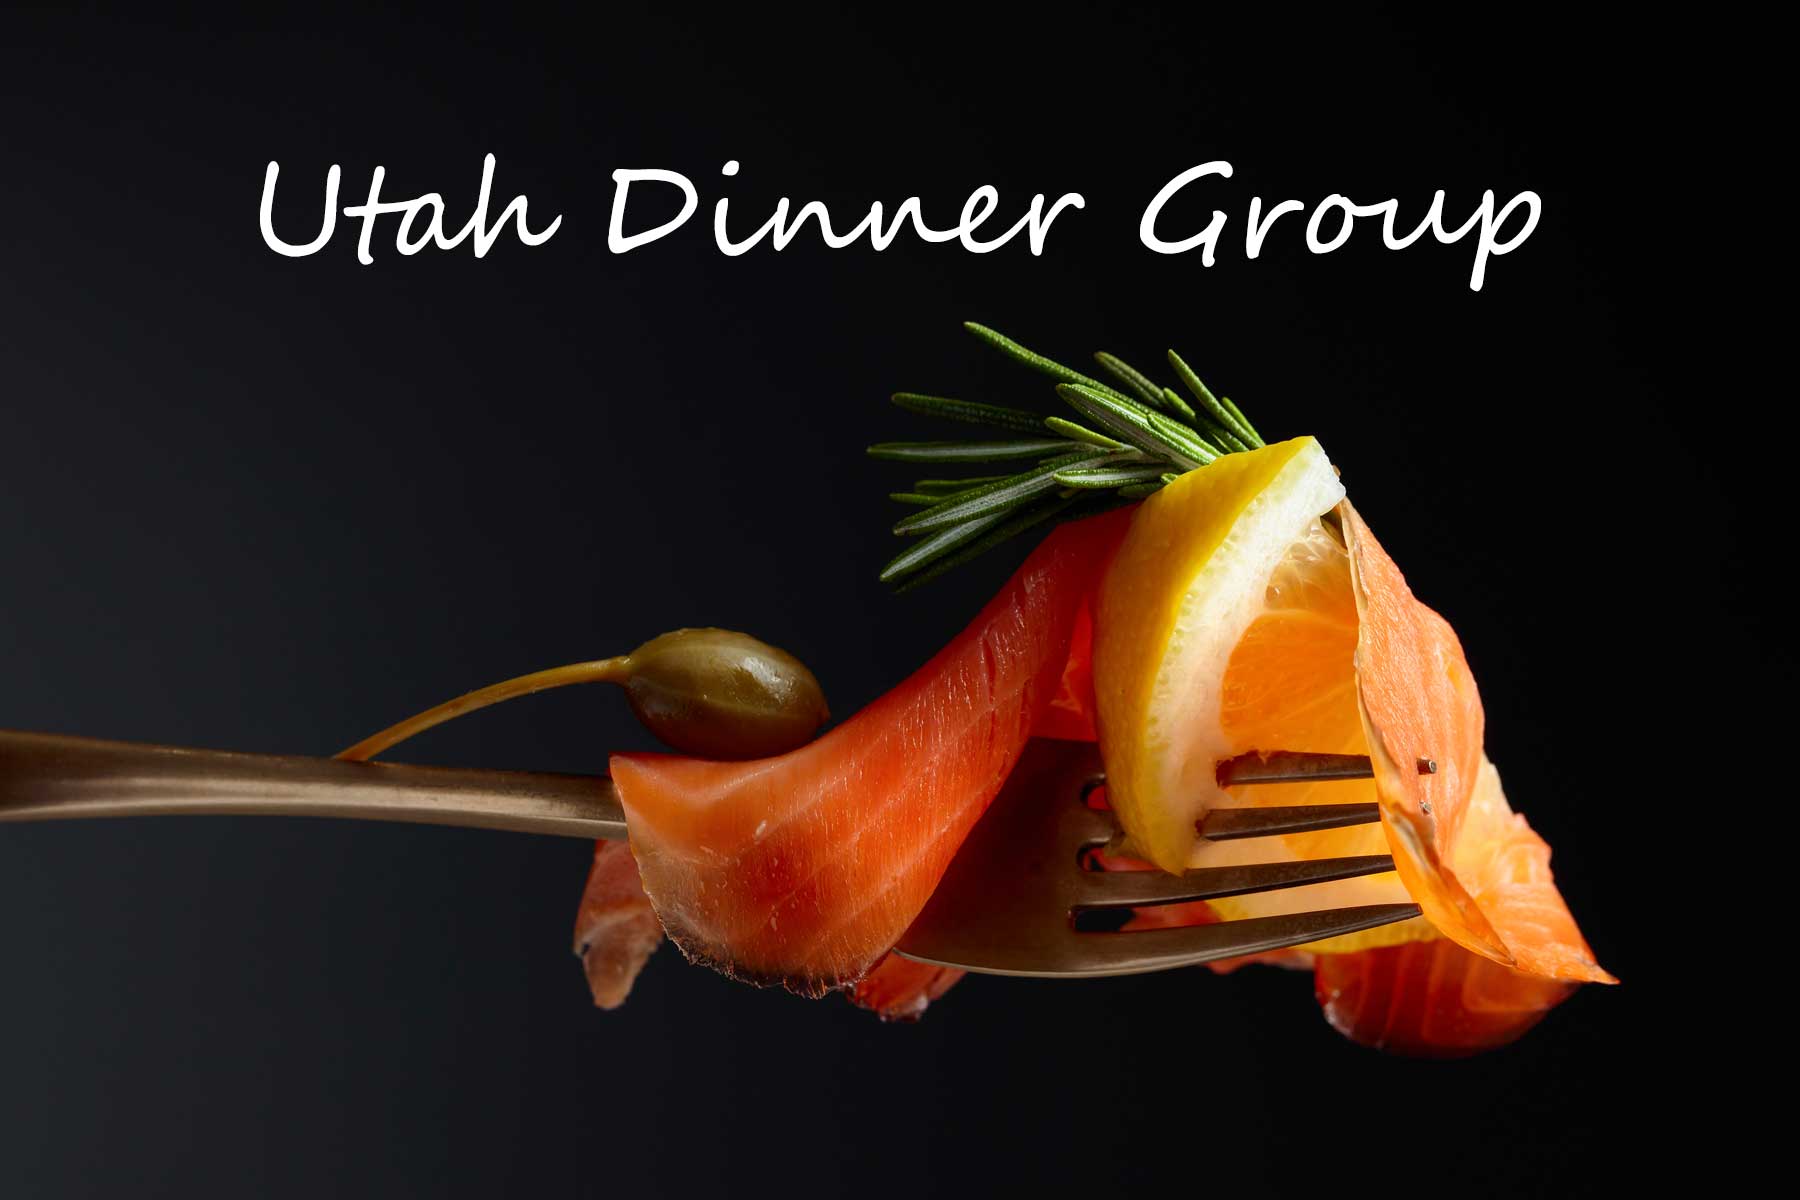 Utah Dinner Group